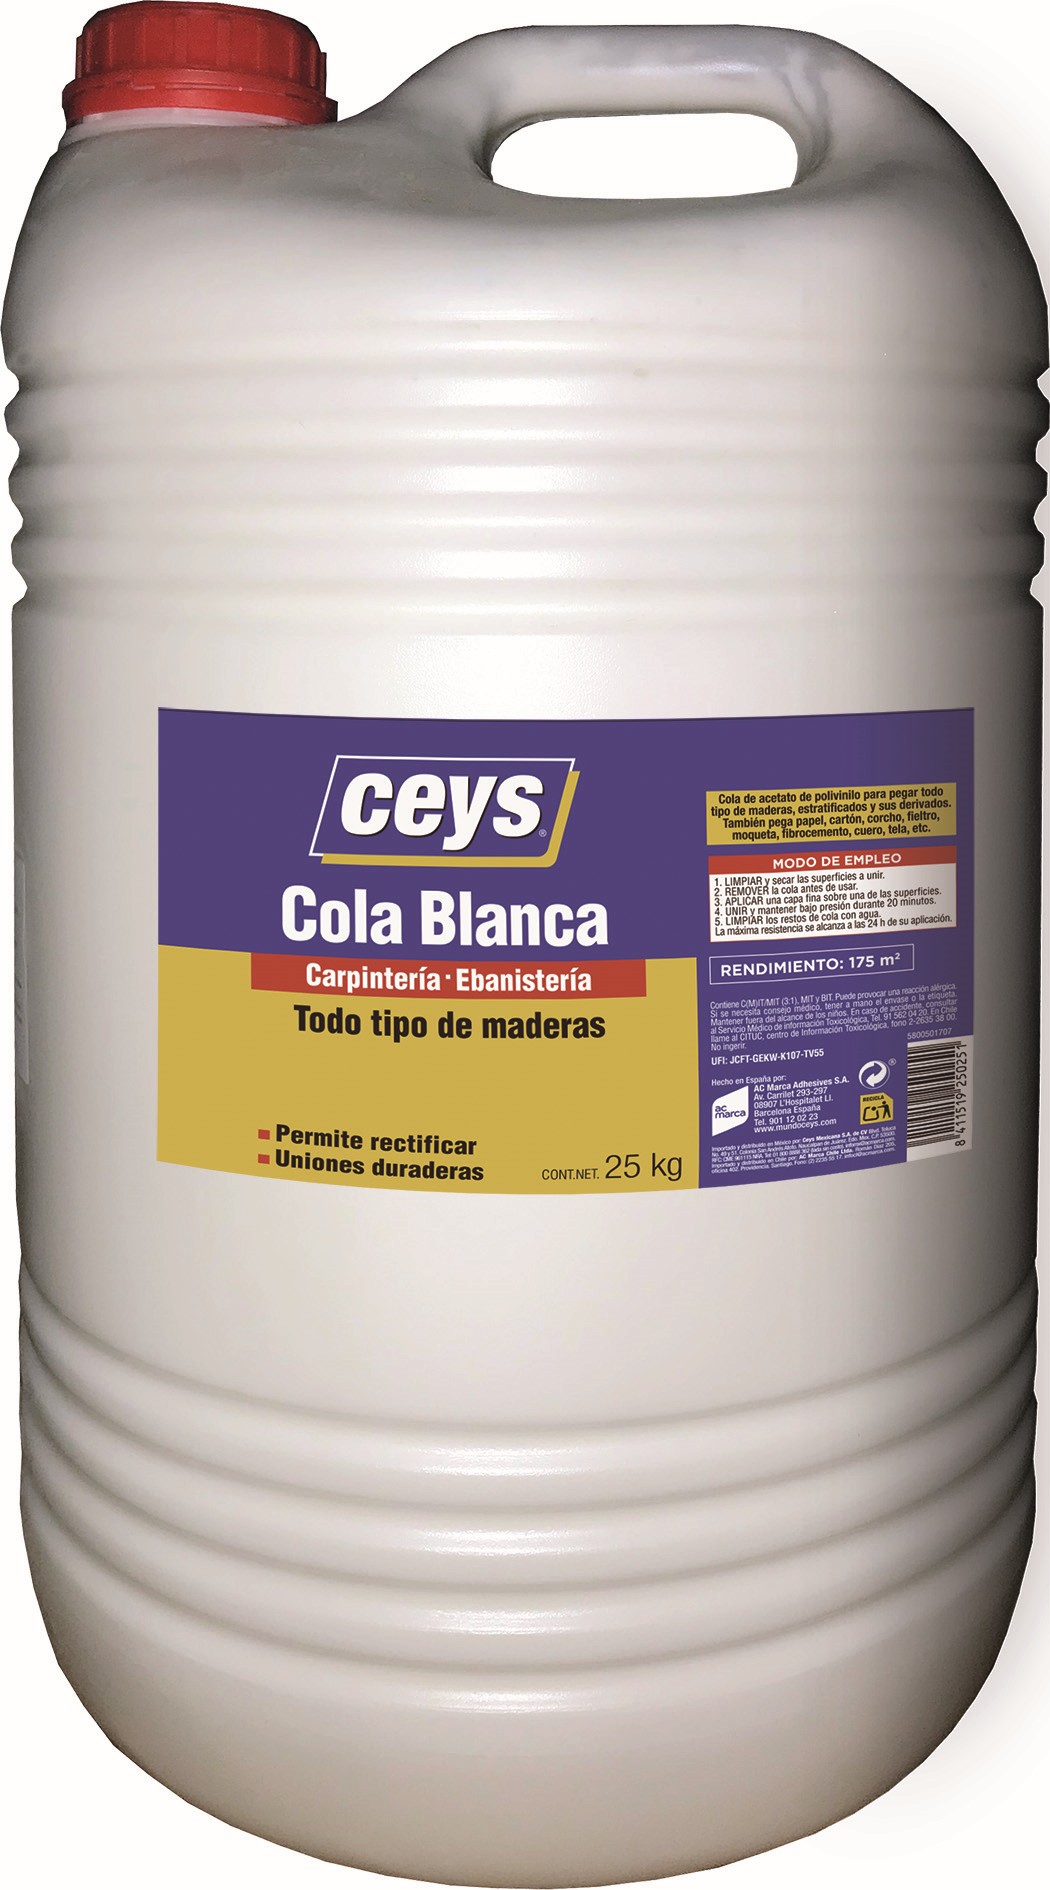 Compra Cola Madera Ceys al mejor precio Envase Bote 5 Kg